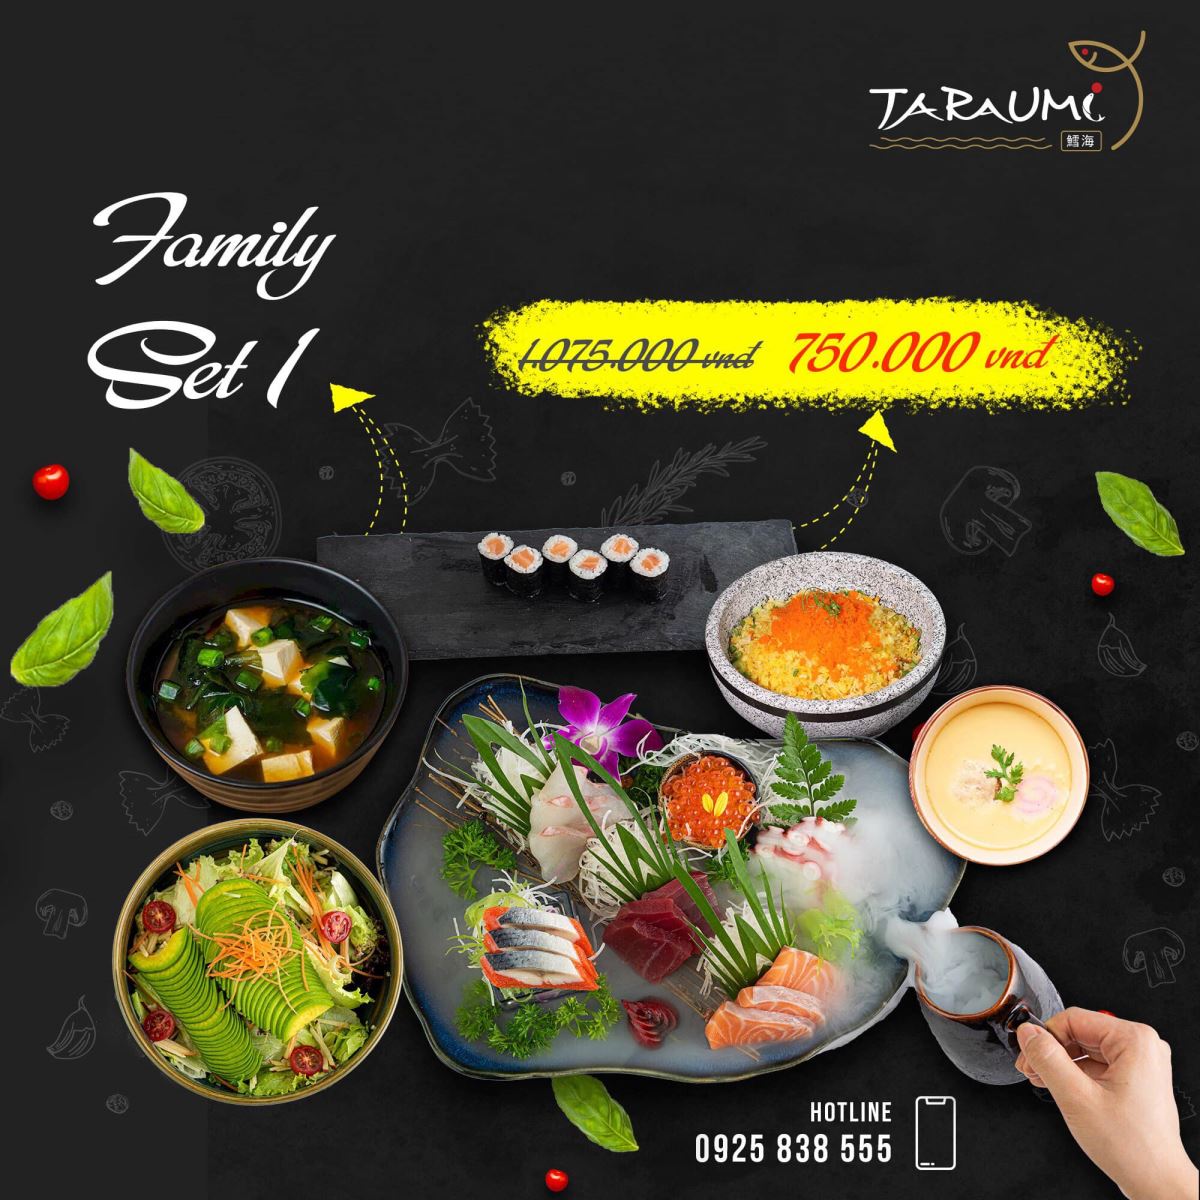 Family set 1 của nhà hàng Taraumi